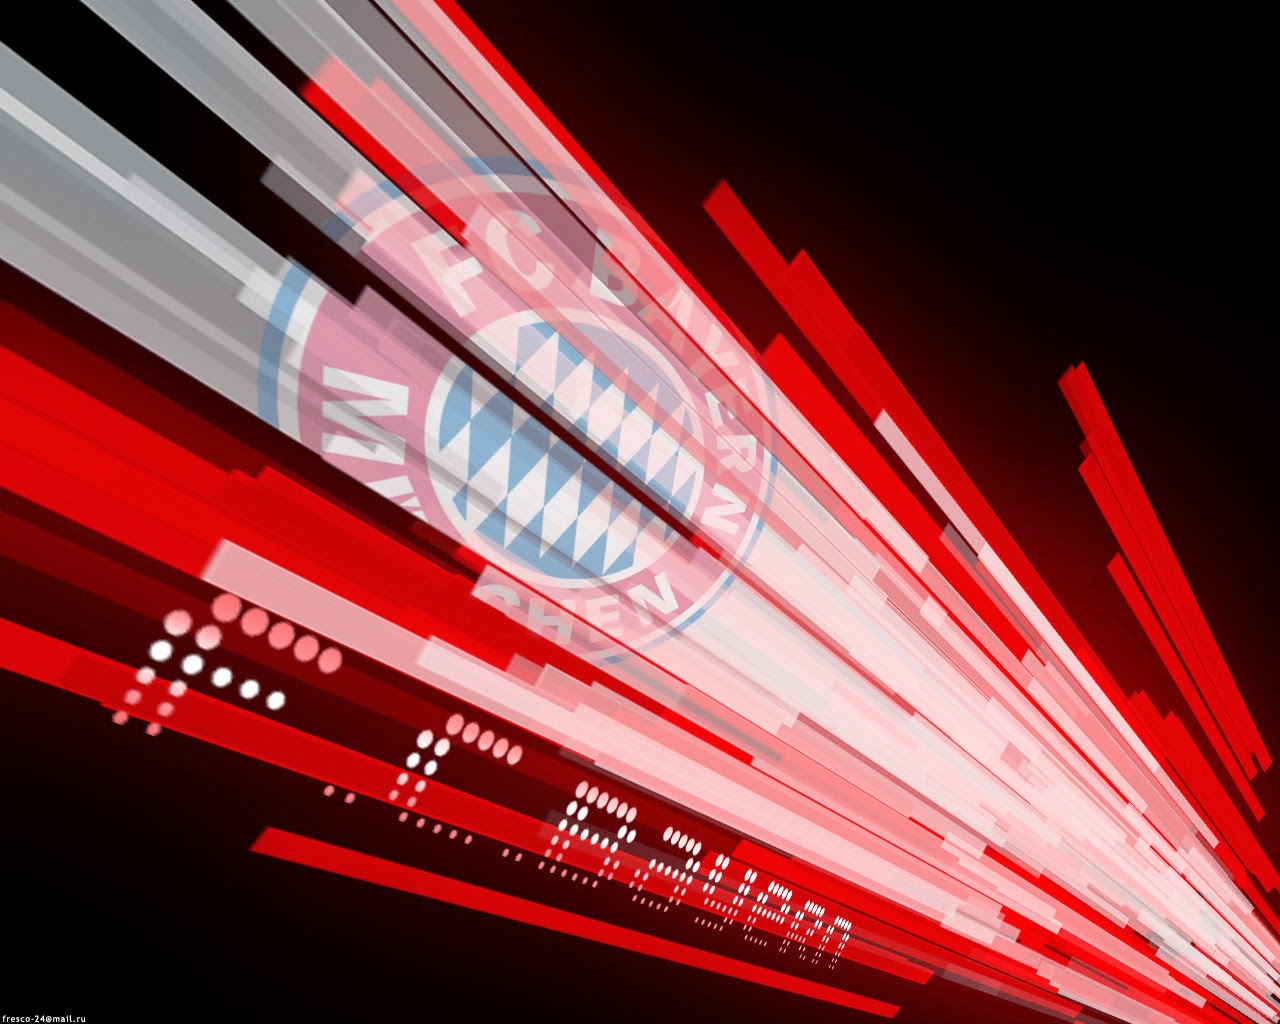 Bayern Munchen Football Club Wallpaper  Football Wallpaper HD